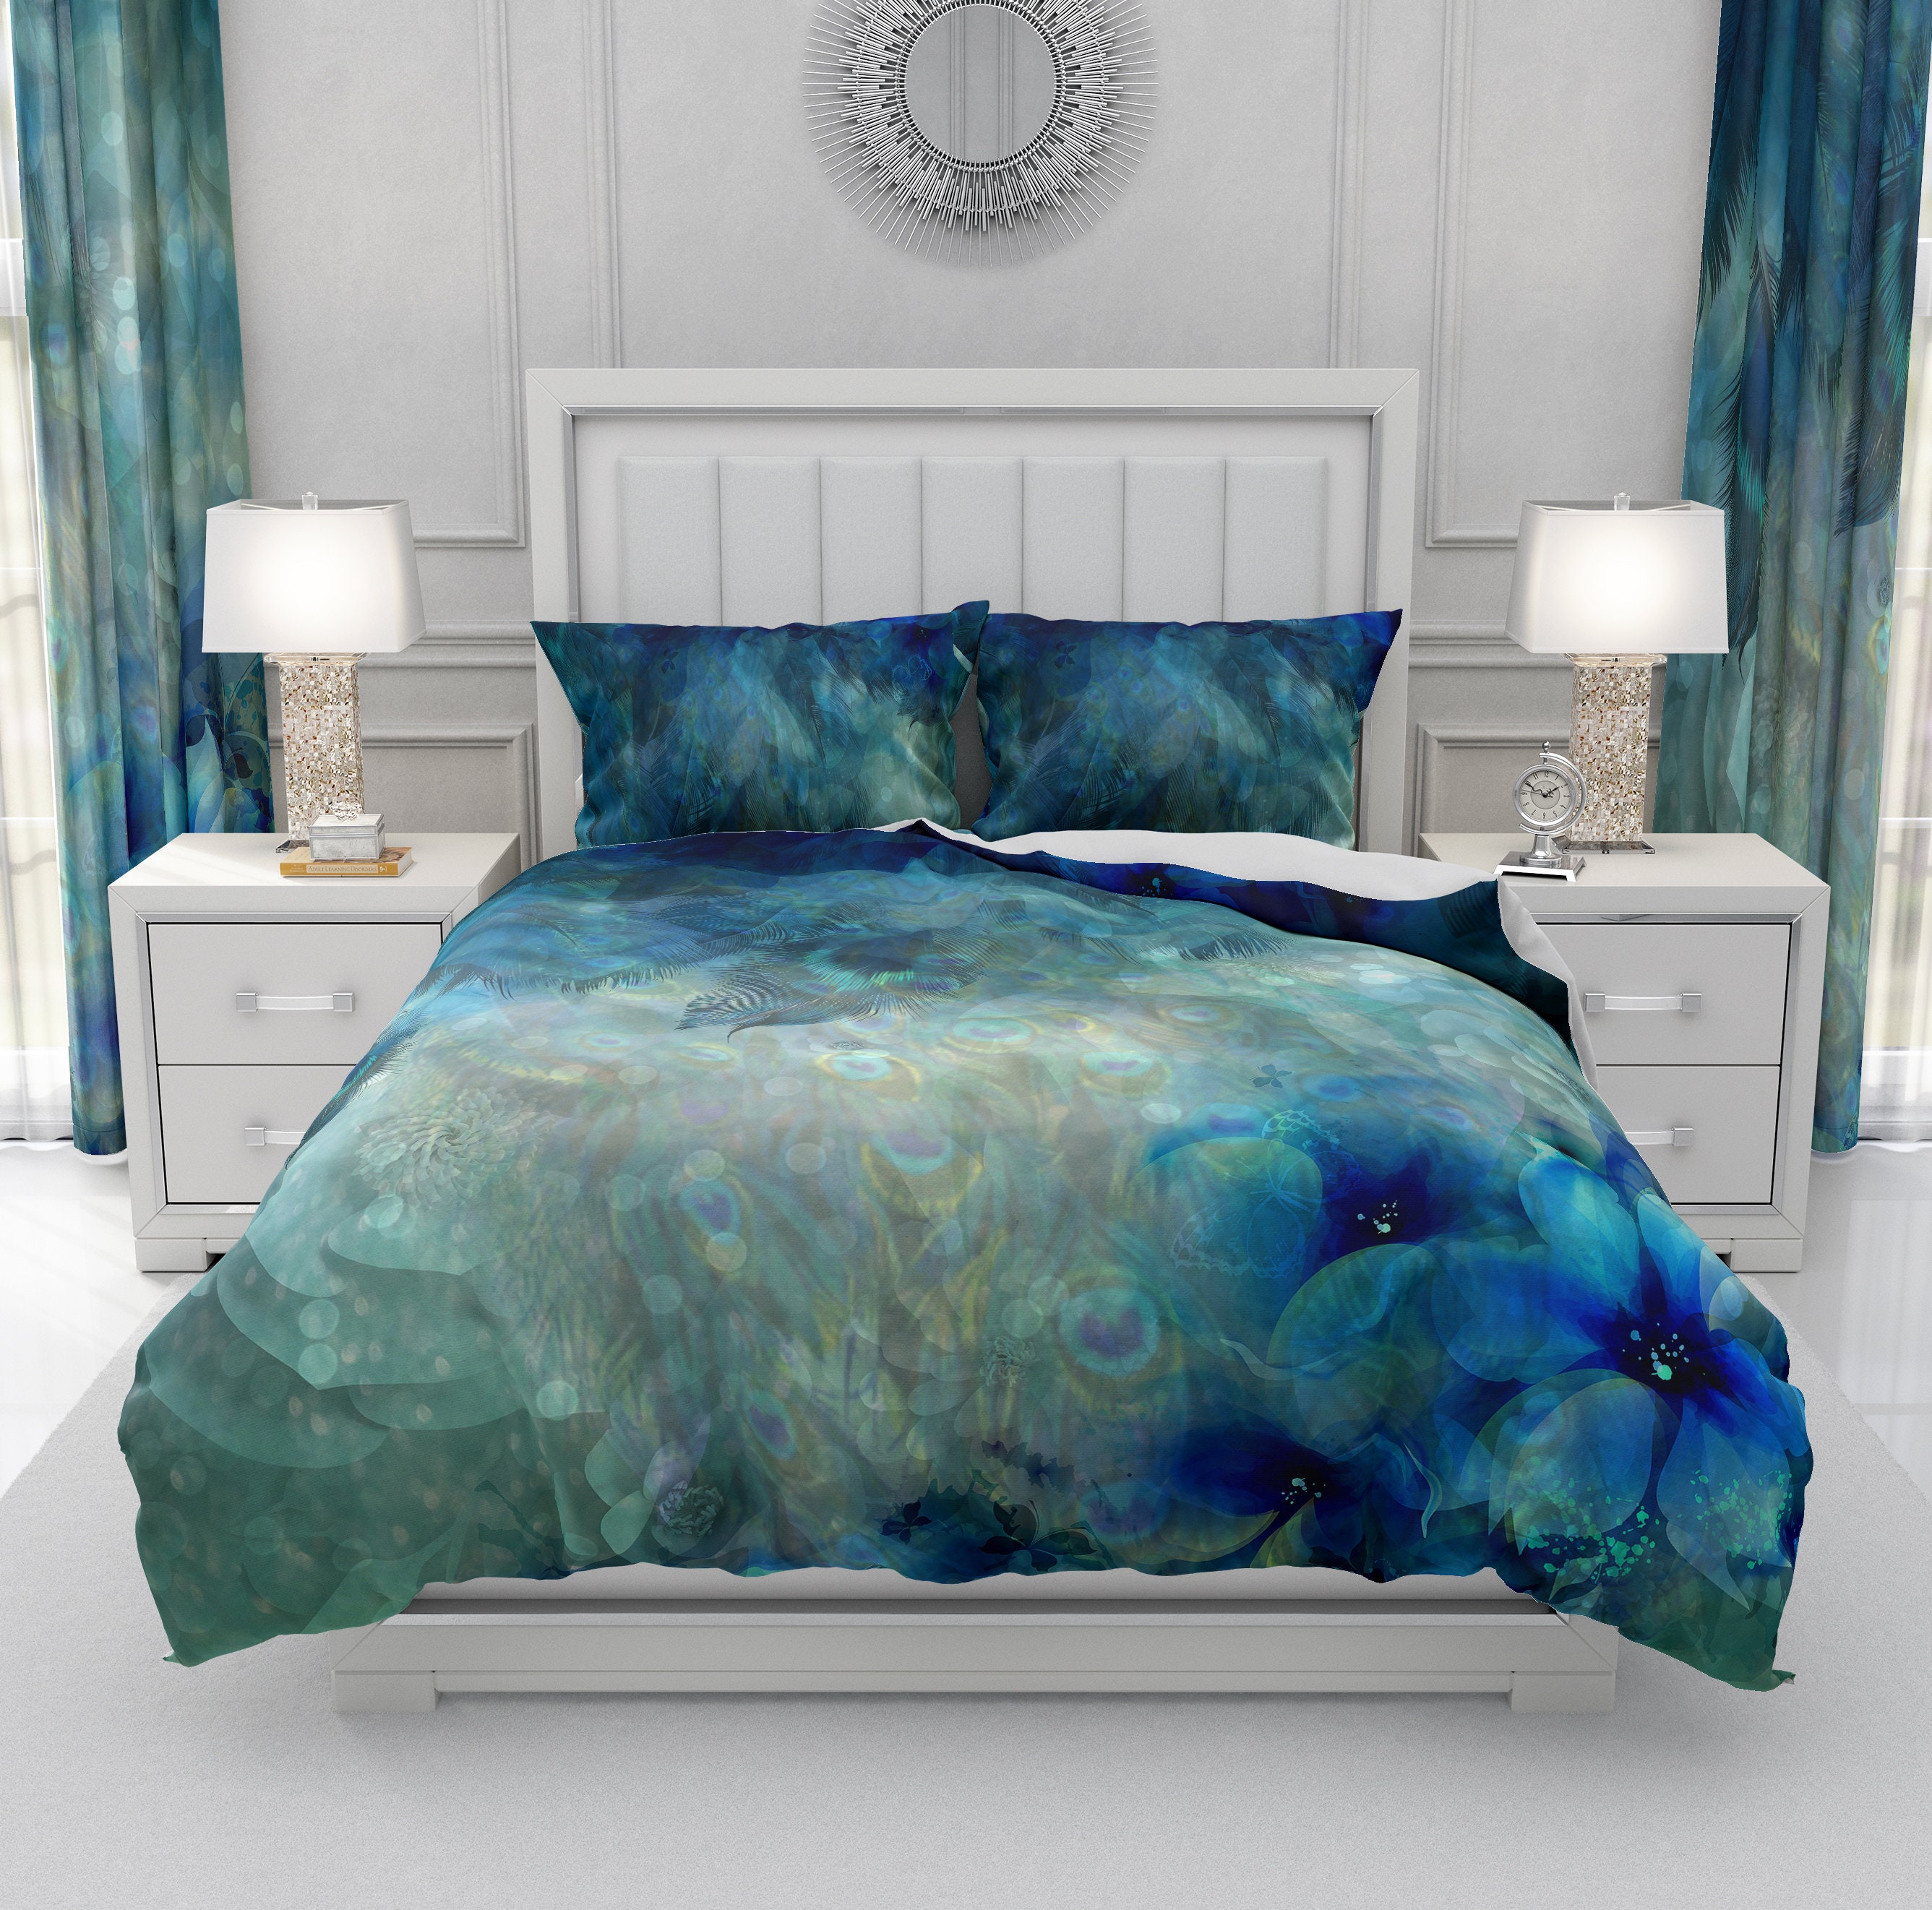 Misty Blue Peacock Comforter Duvet Cover Pillow Shams